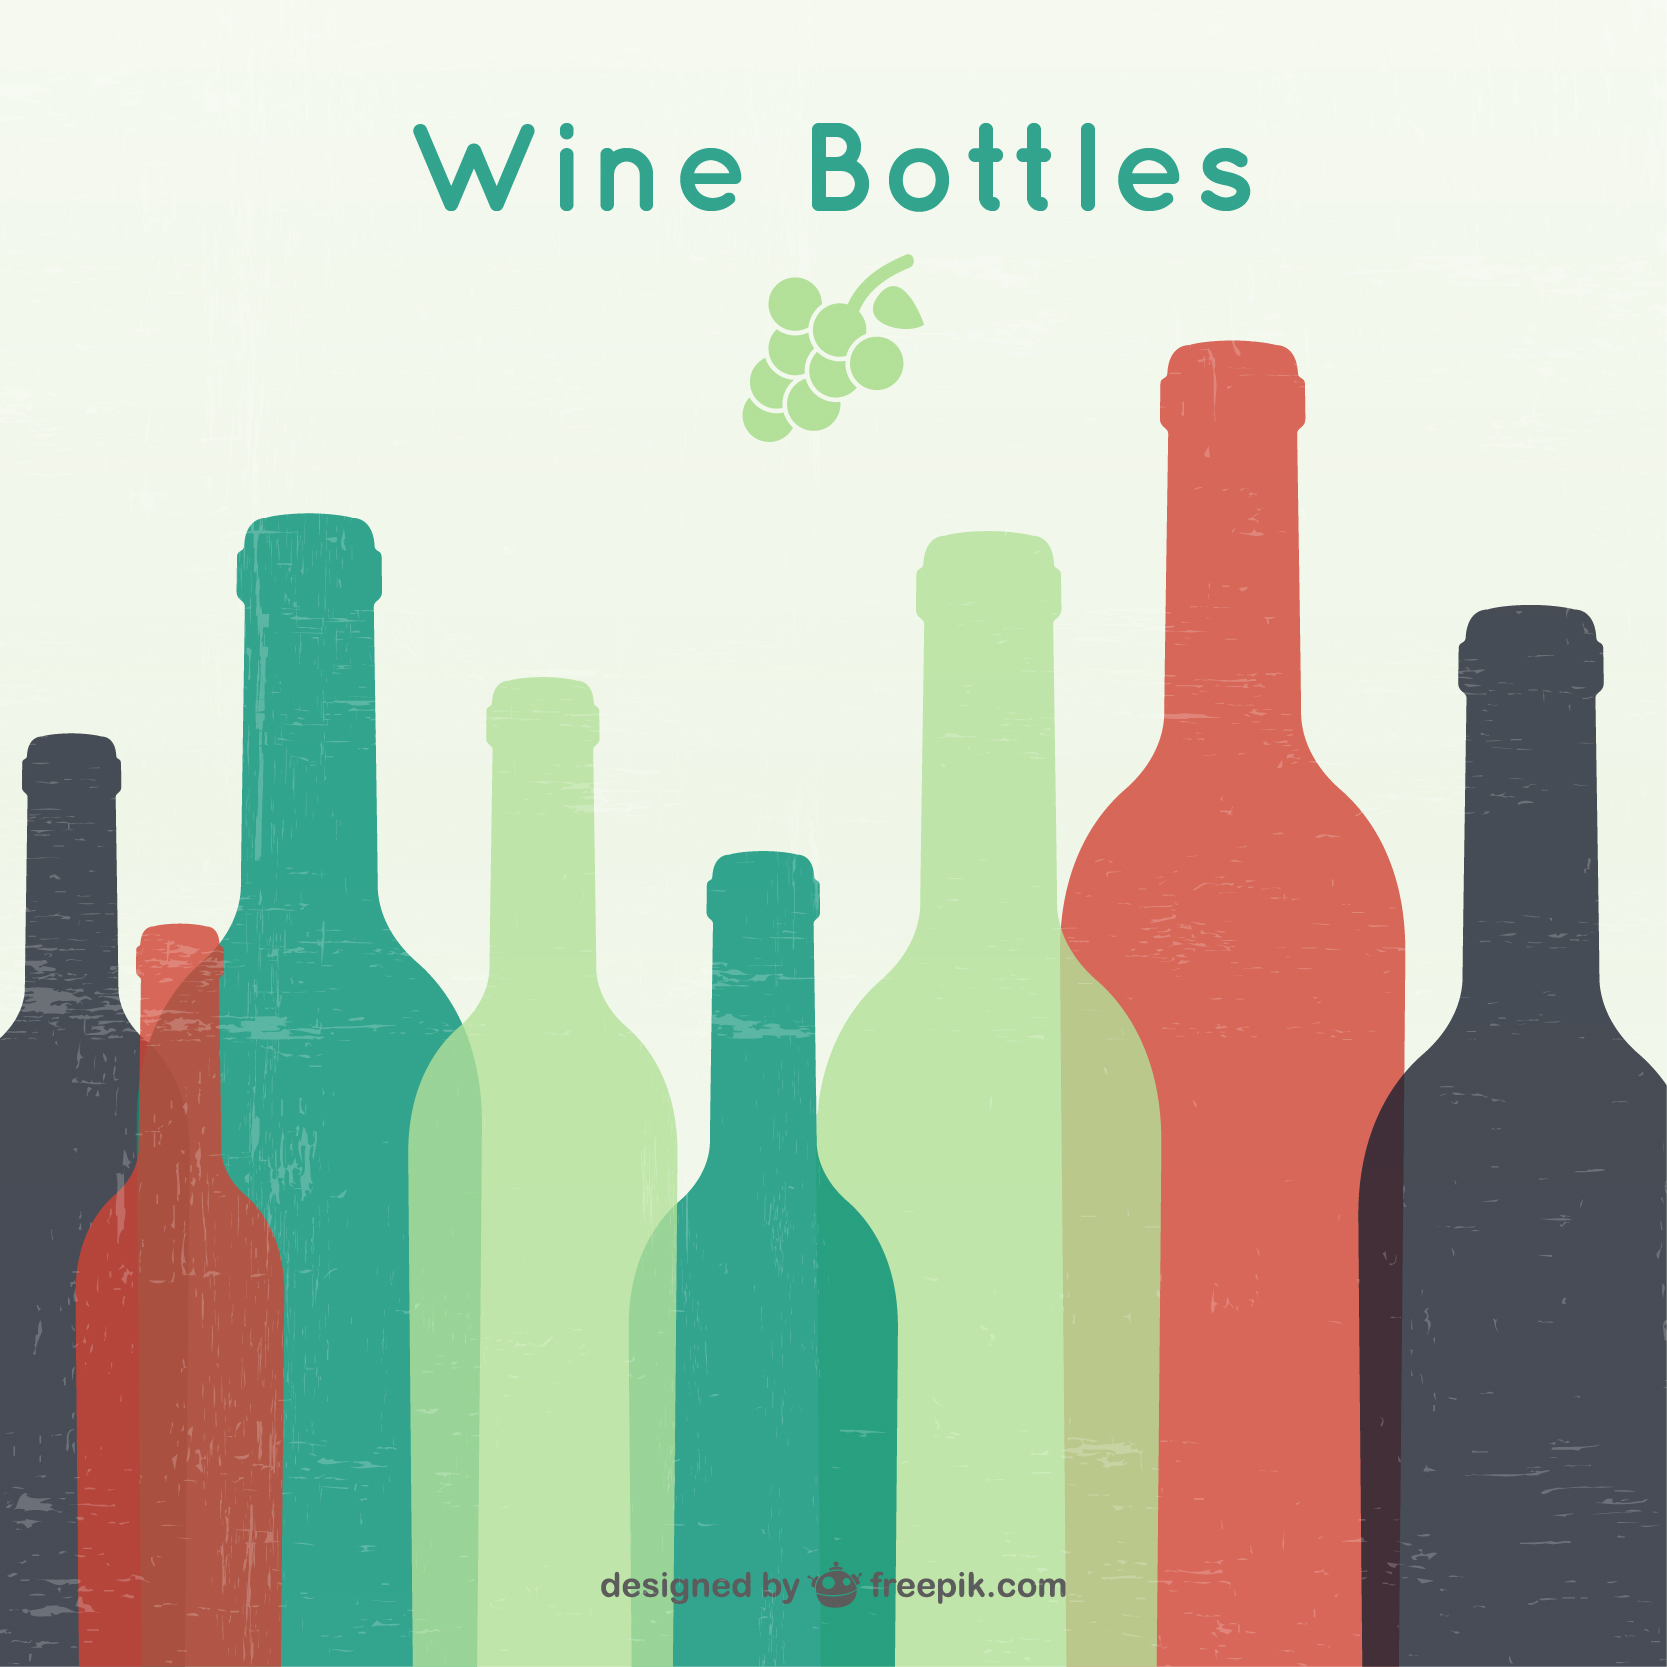 2018.7.22 wine bottles.jpg